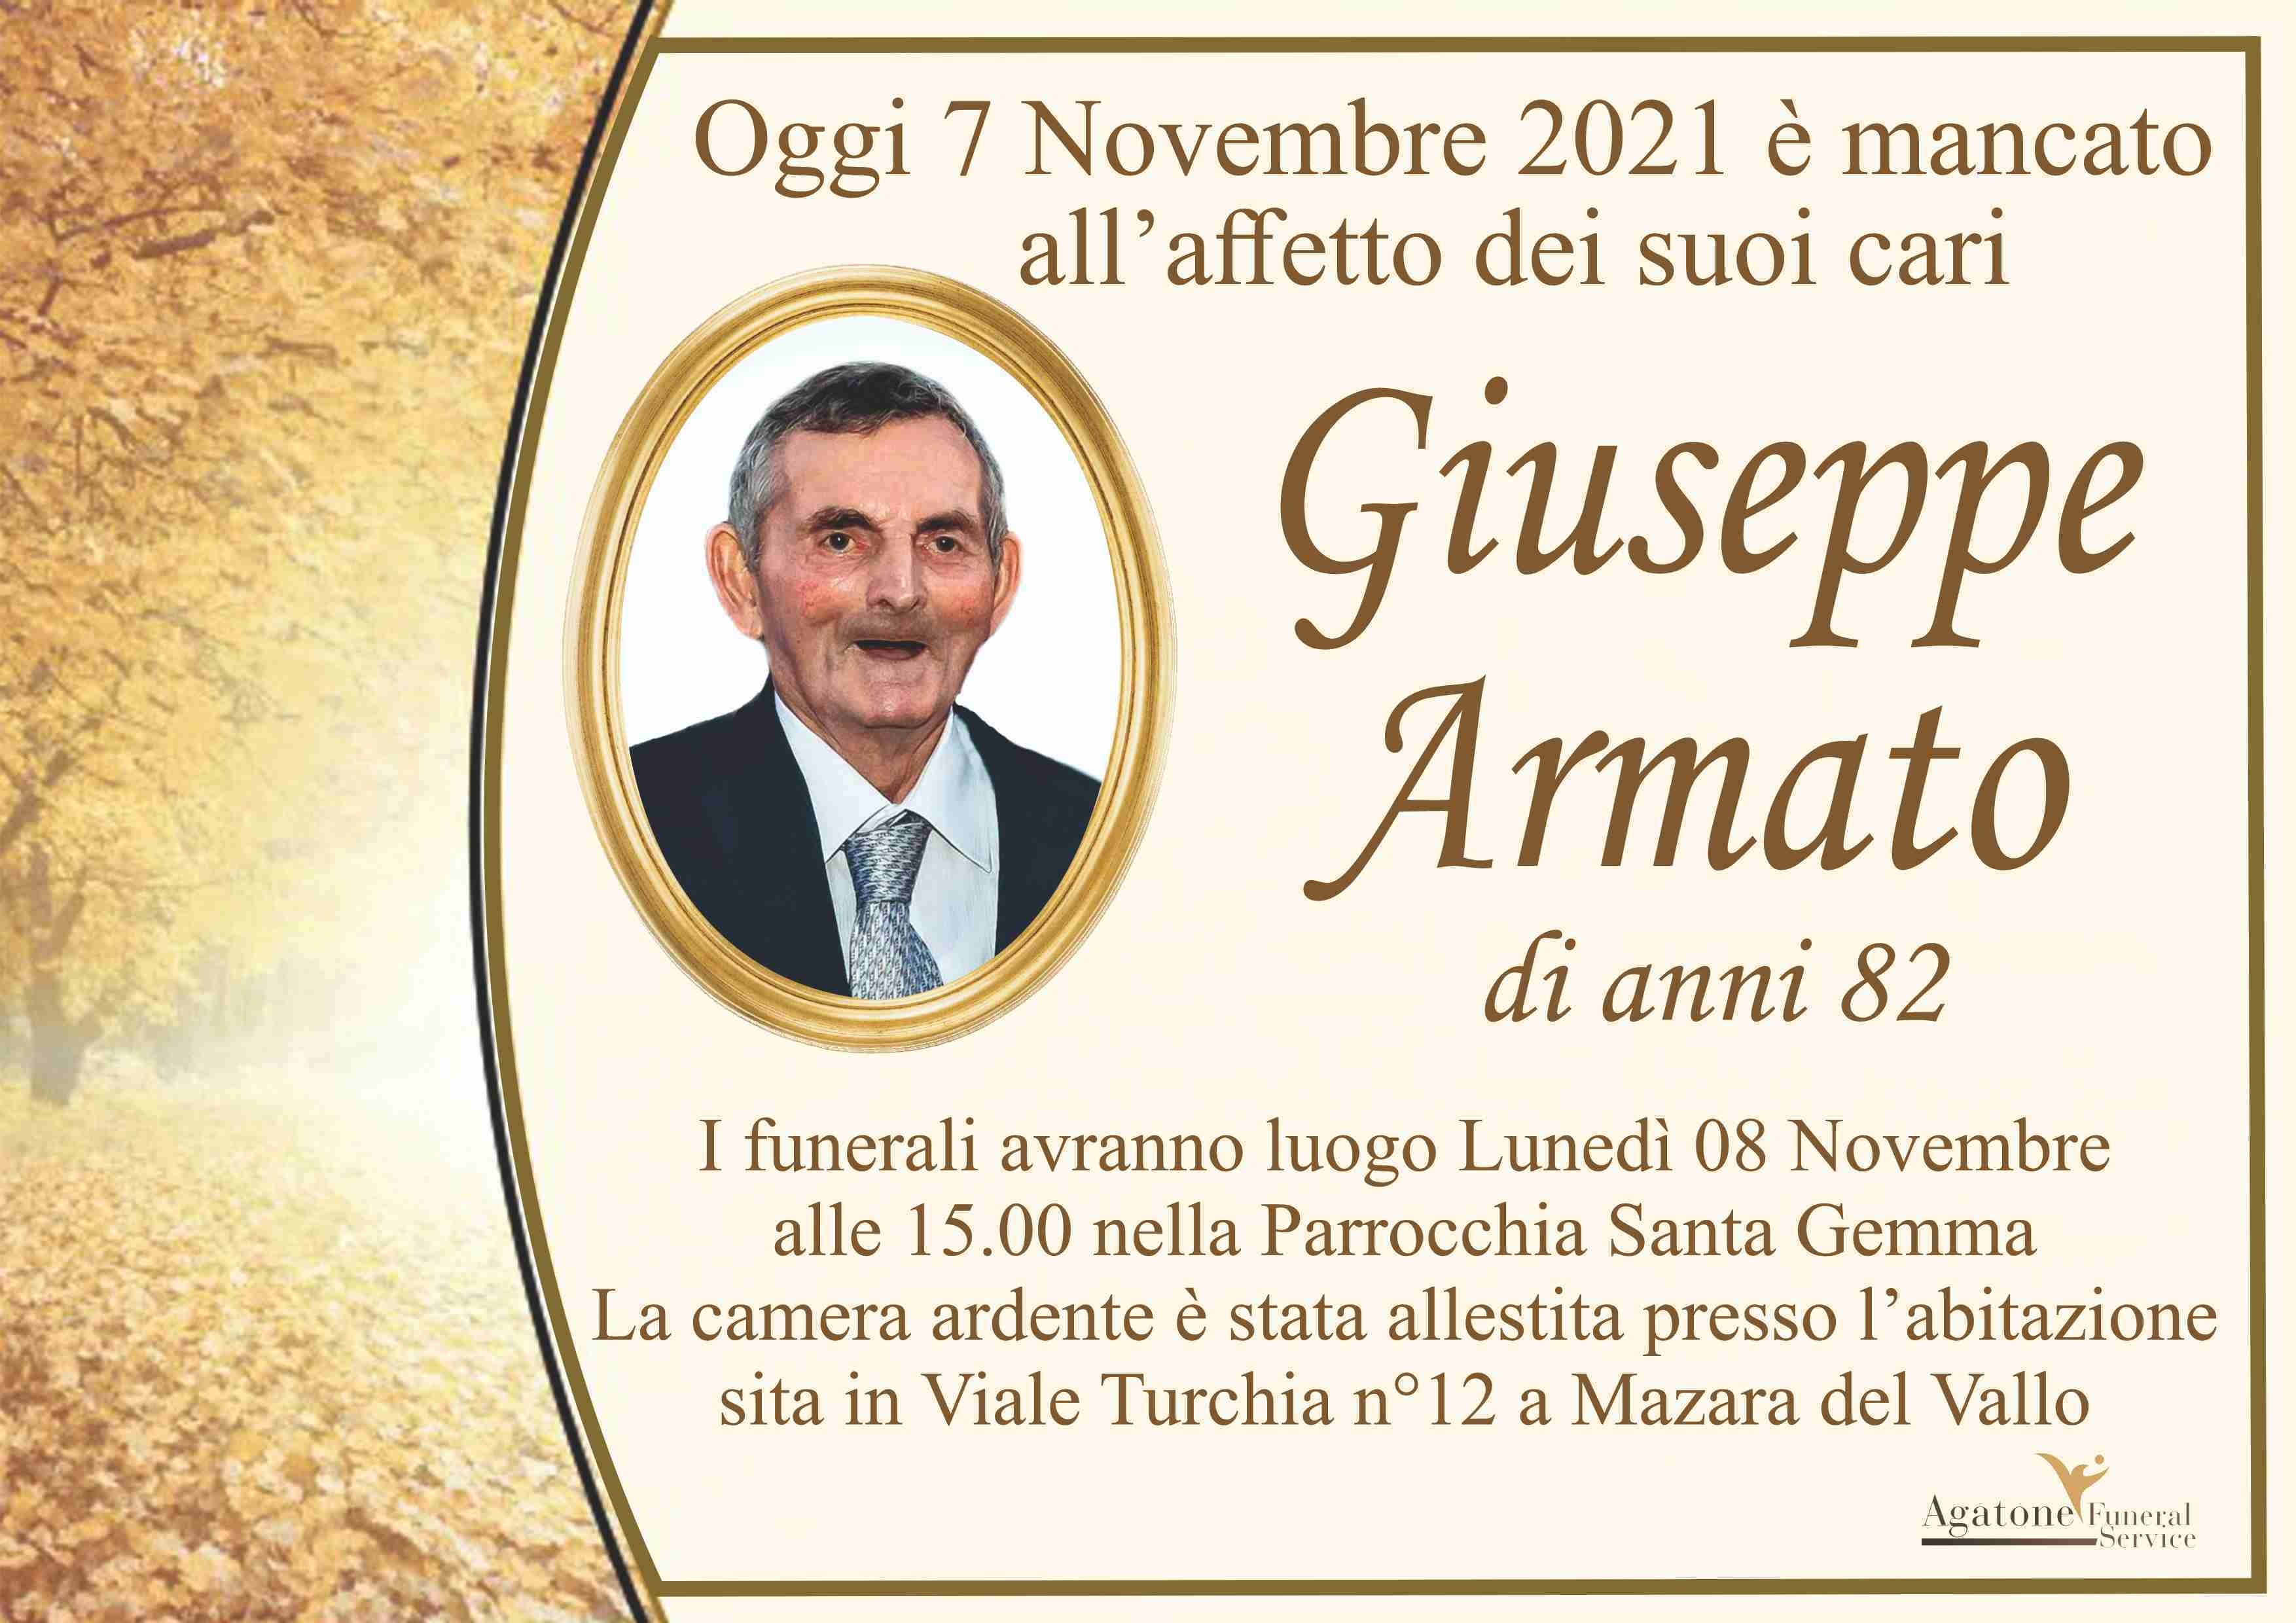 Giuseppe Armato